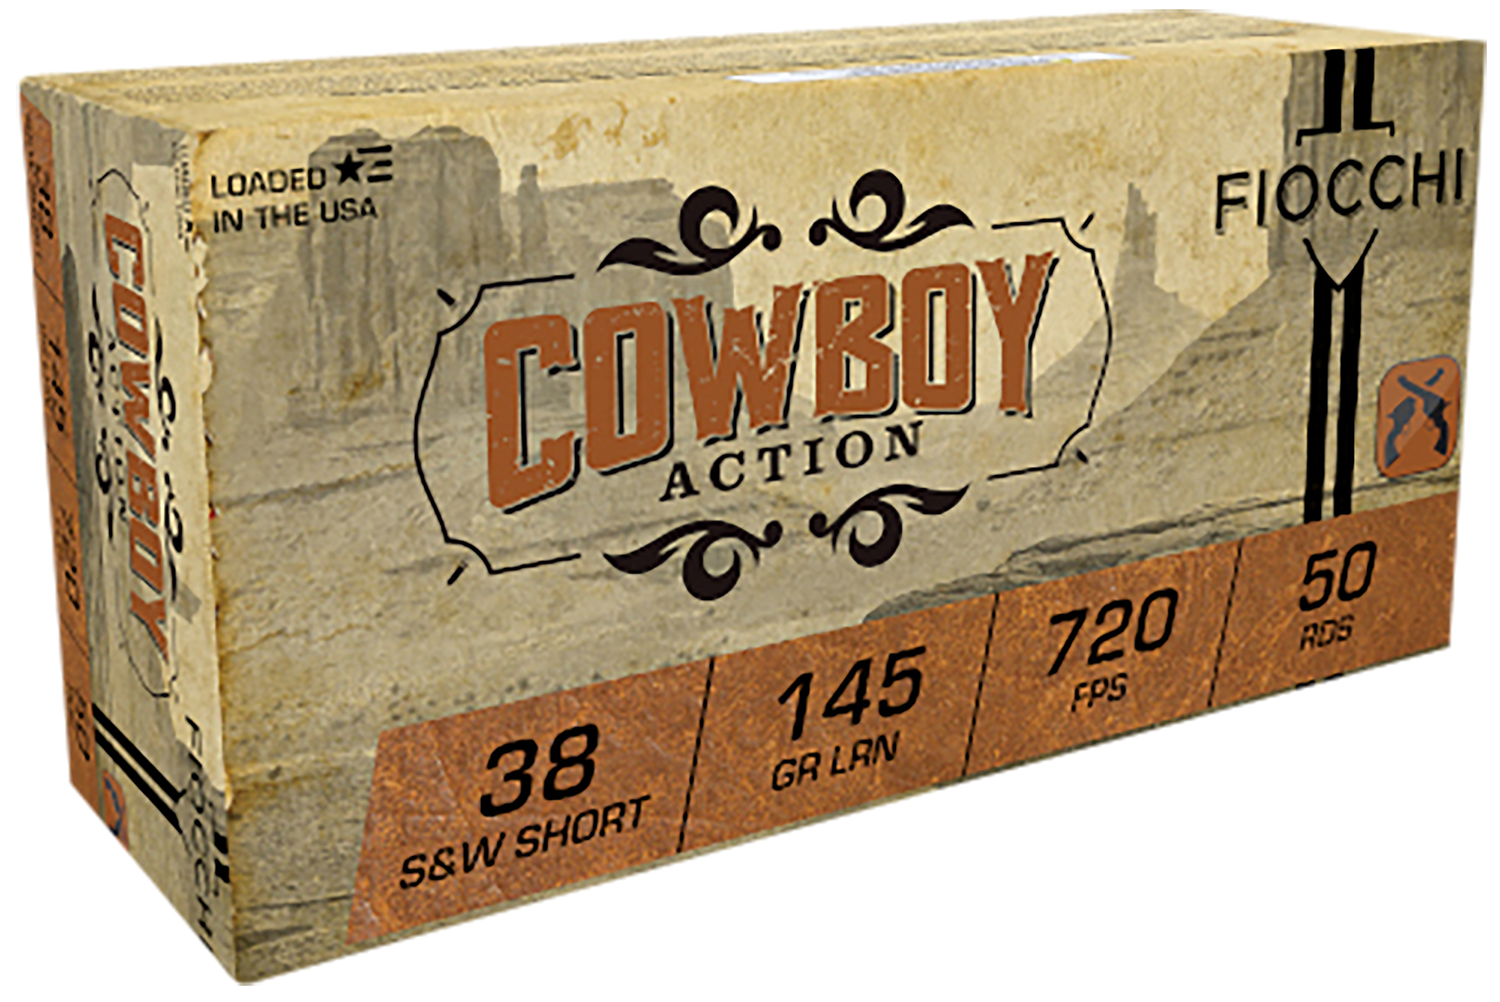 Fiocchi 38SWSHL Cowboy Action  38 S&W Short 145 gr Lead Round Nose (LRN) 50 Bx/ 20 Cs